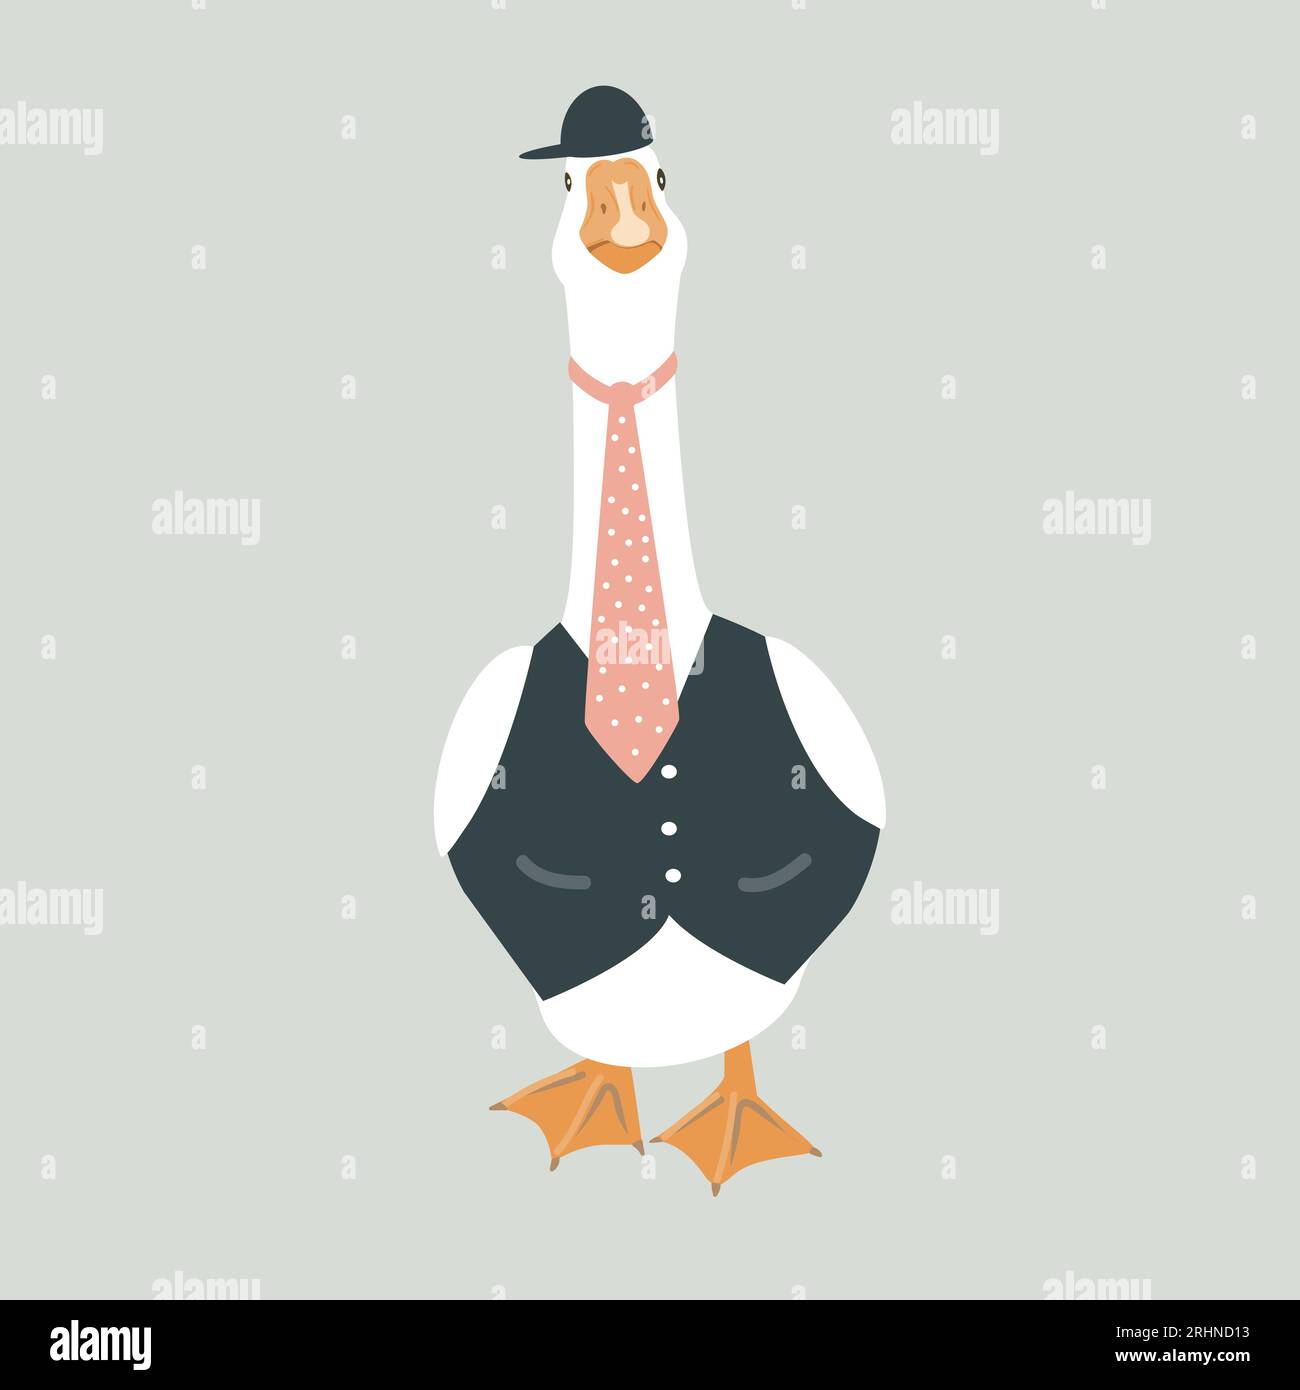 Graziosa oca maschile vestita con un gilet, una cravatta e un berretto. Illustrazione antropomorfa, vettore isolato di uccello di moda Illustrazione Vettoriale